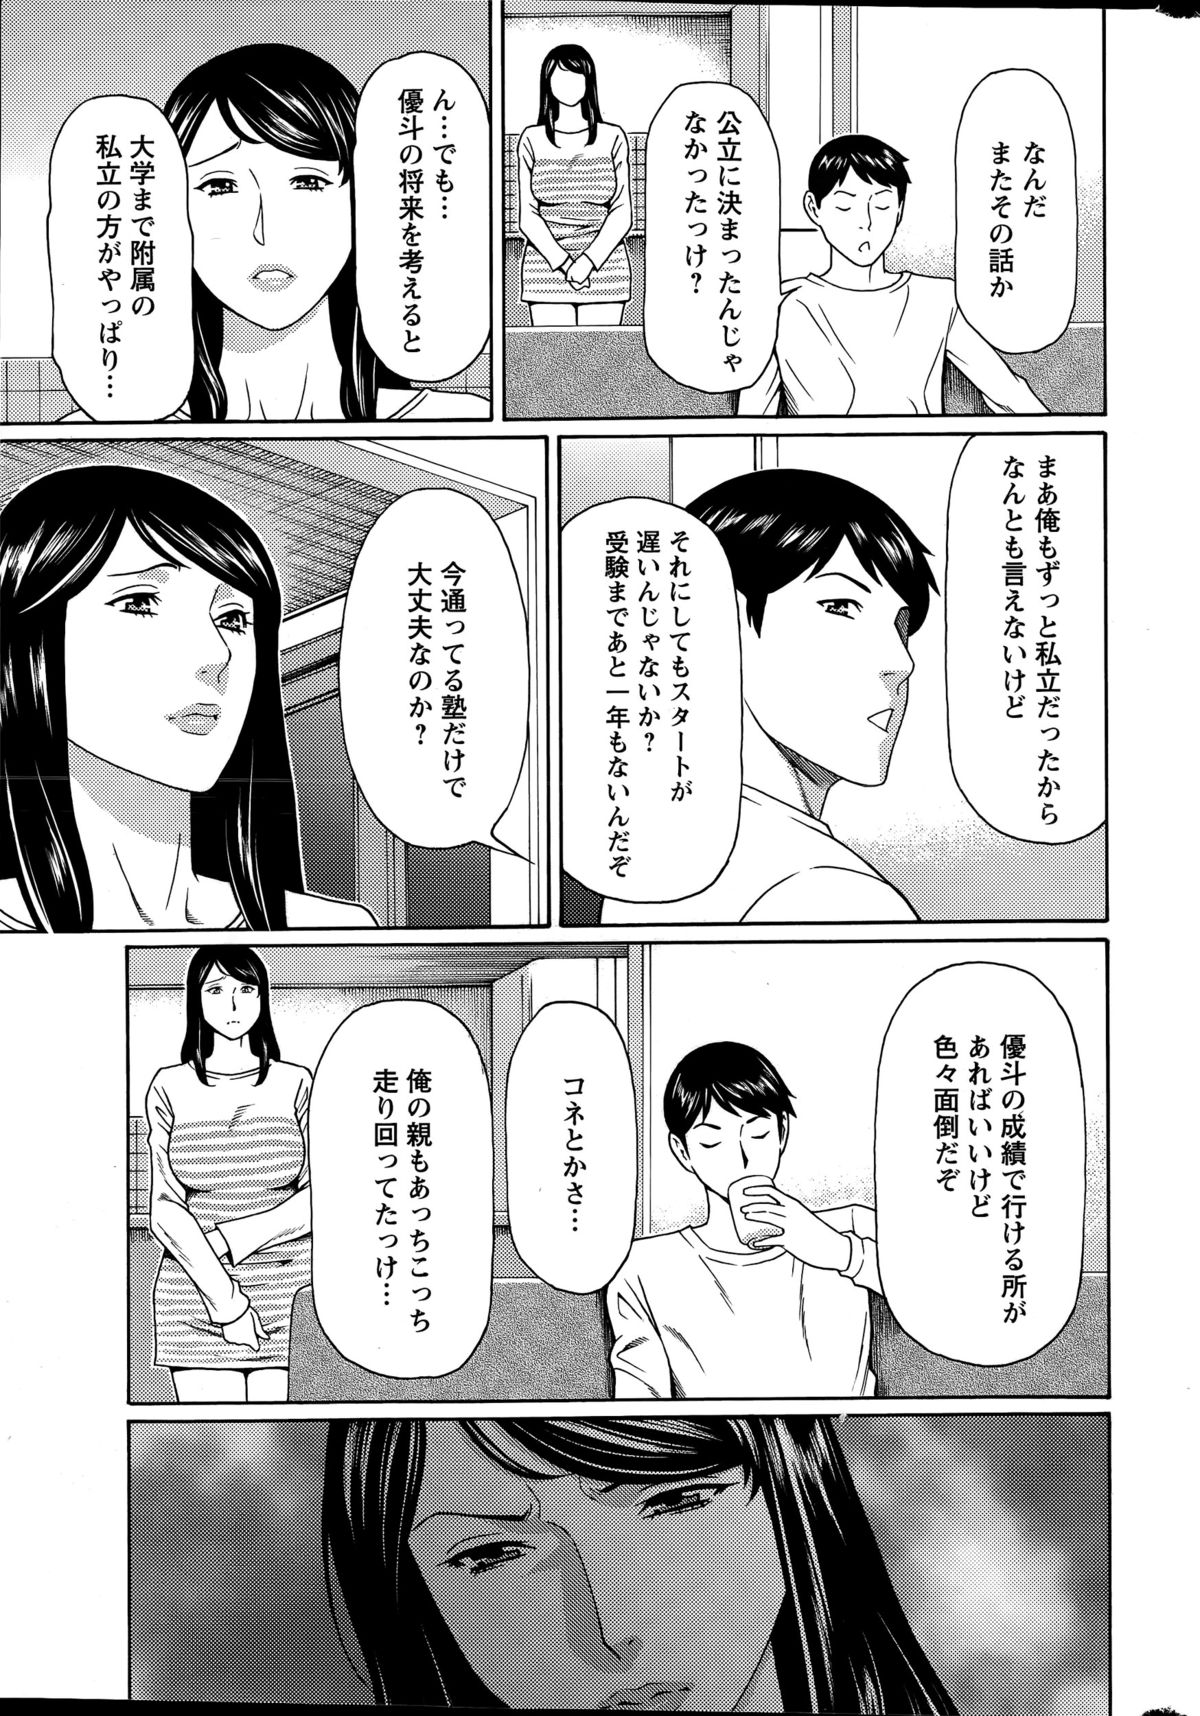 [Takasugi Kou] Mumyou no Uzu Ch. 1-4 page 9 full